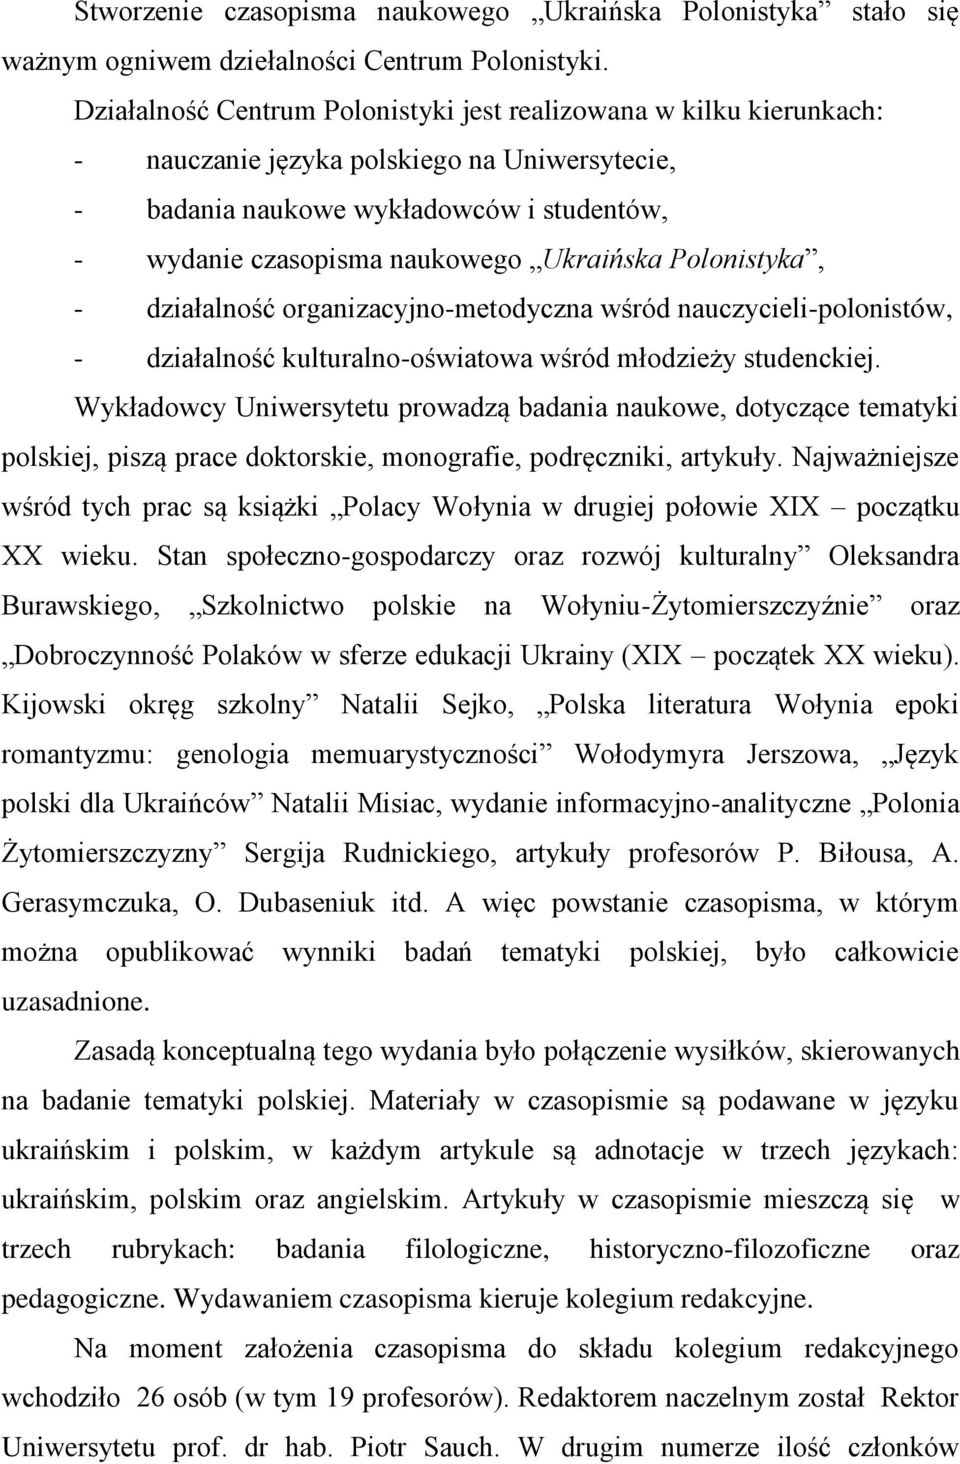 Polonistyka, - działalność organizacyjno-metodyczna wśród nauczycieli-polonistów, - działalność kulturalno-oświatowa wśród młodzieży studenckiej.